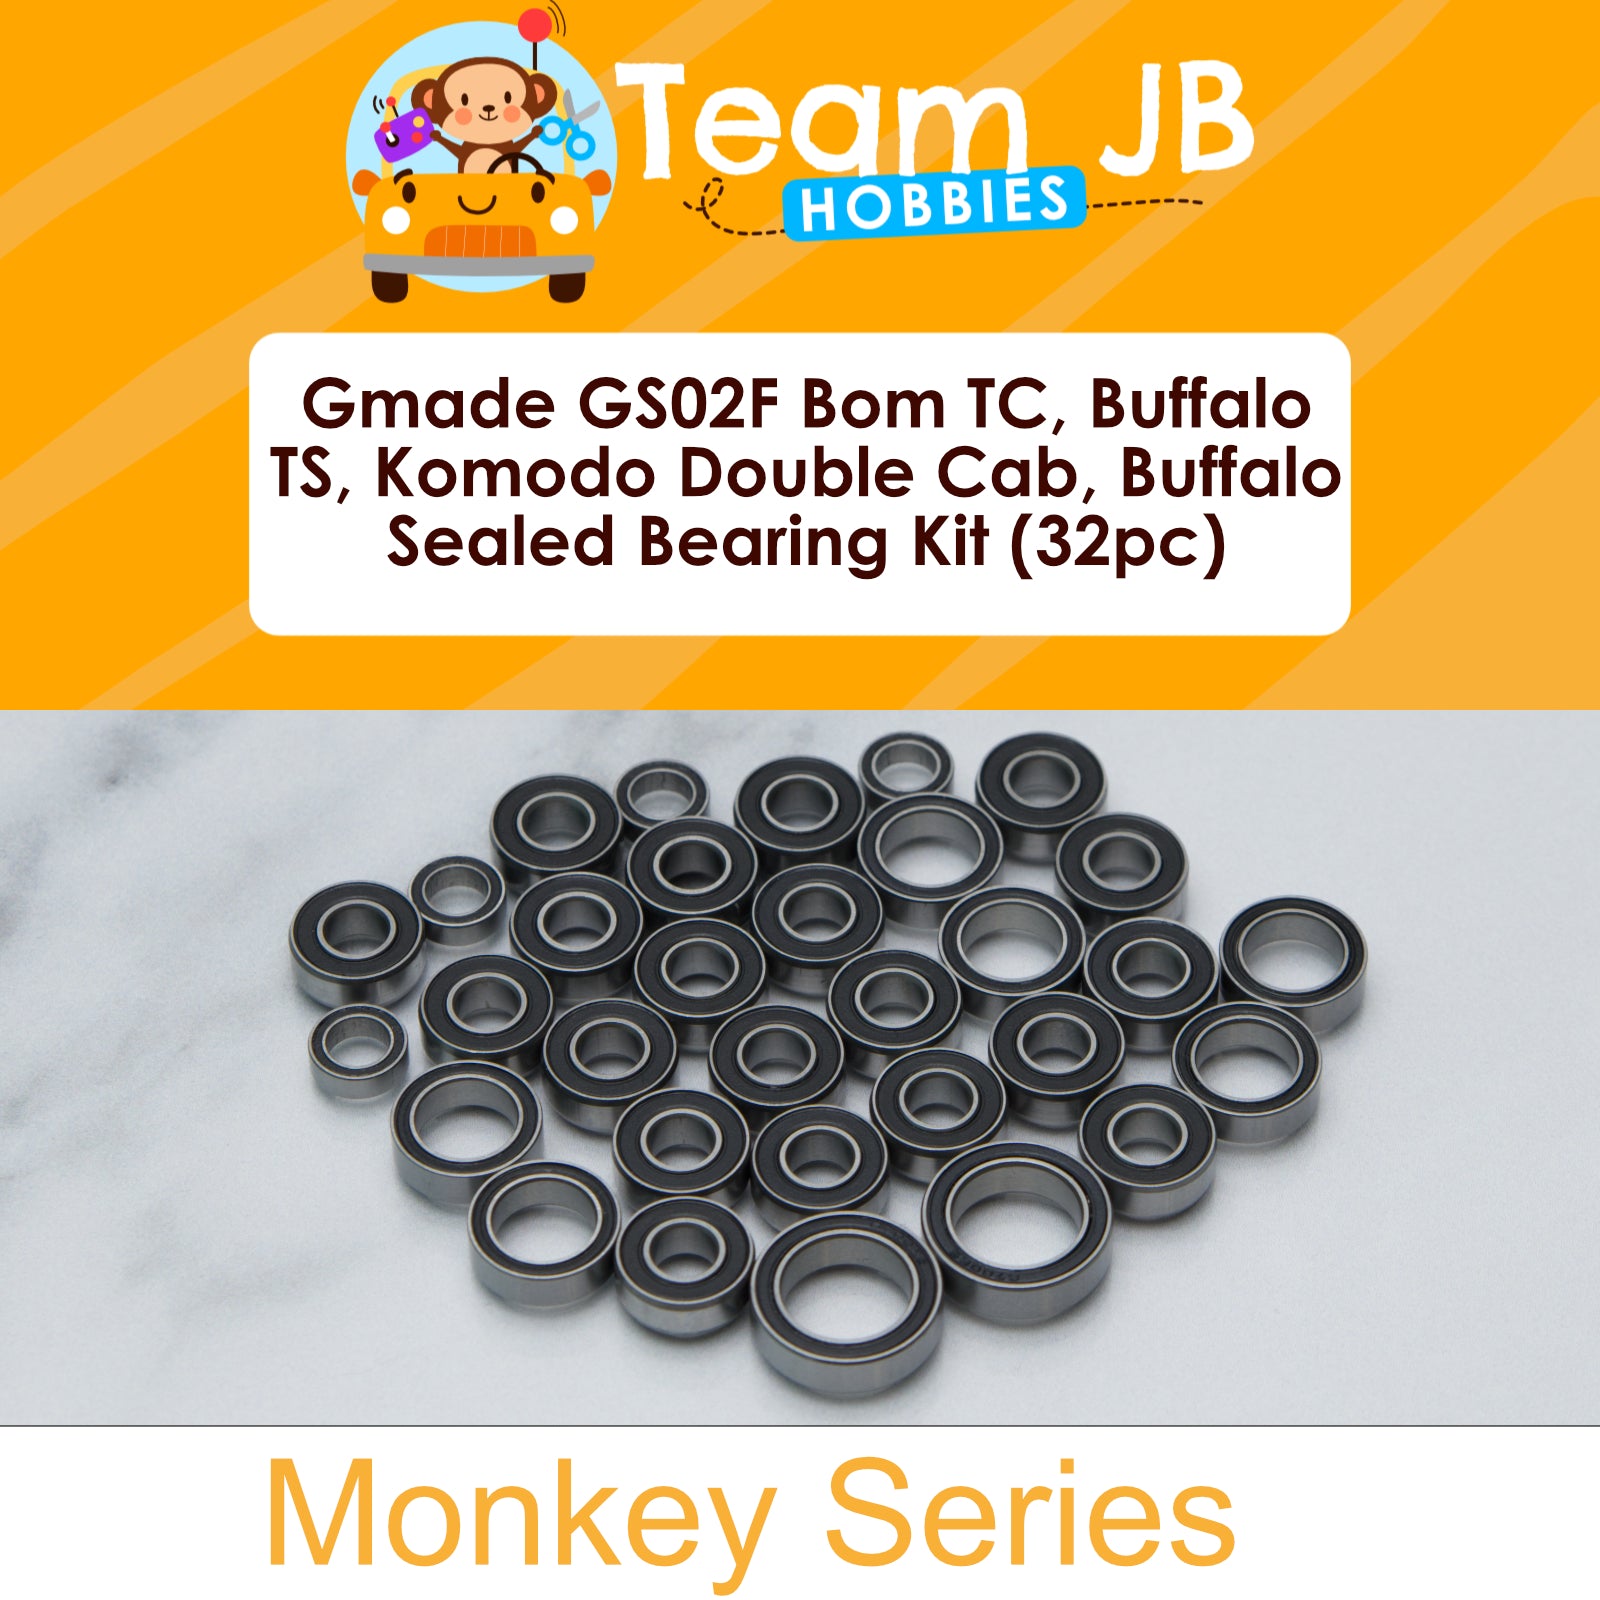 Gmade GS02F Bom TC, Buffalo TS, Komodo Double Cab, Military Buffalo TS - Sealed Bearing Kit